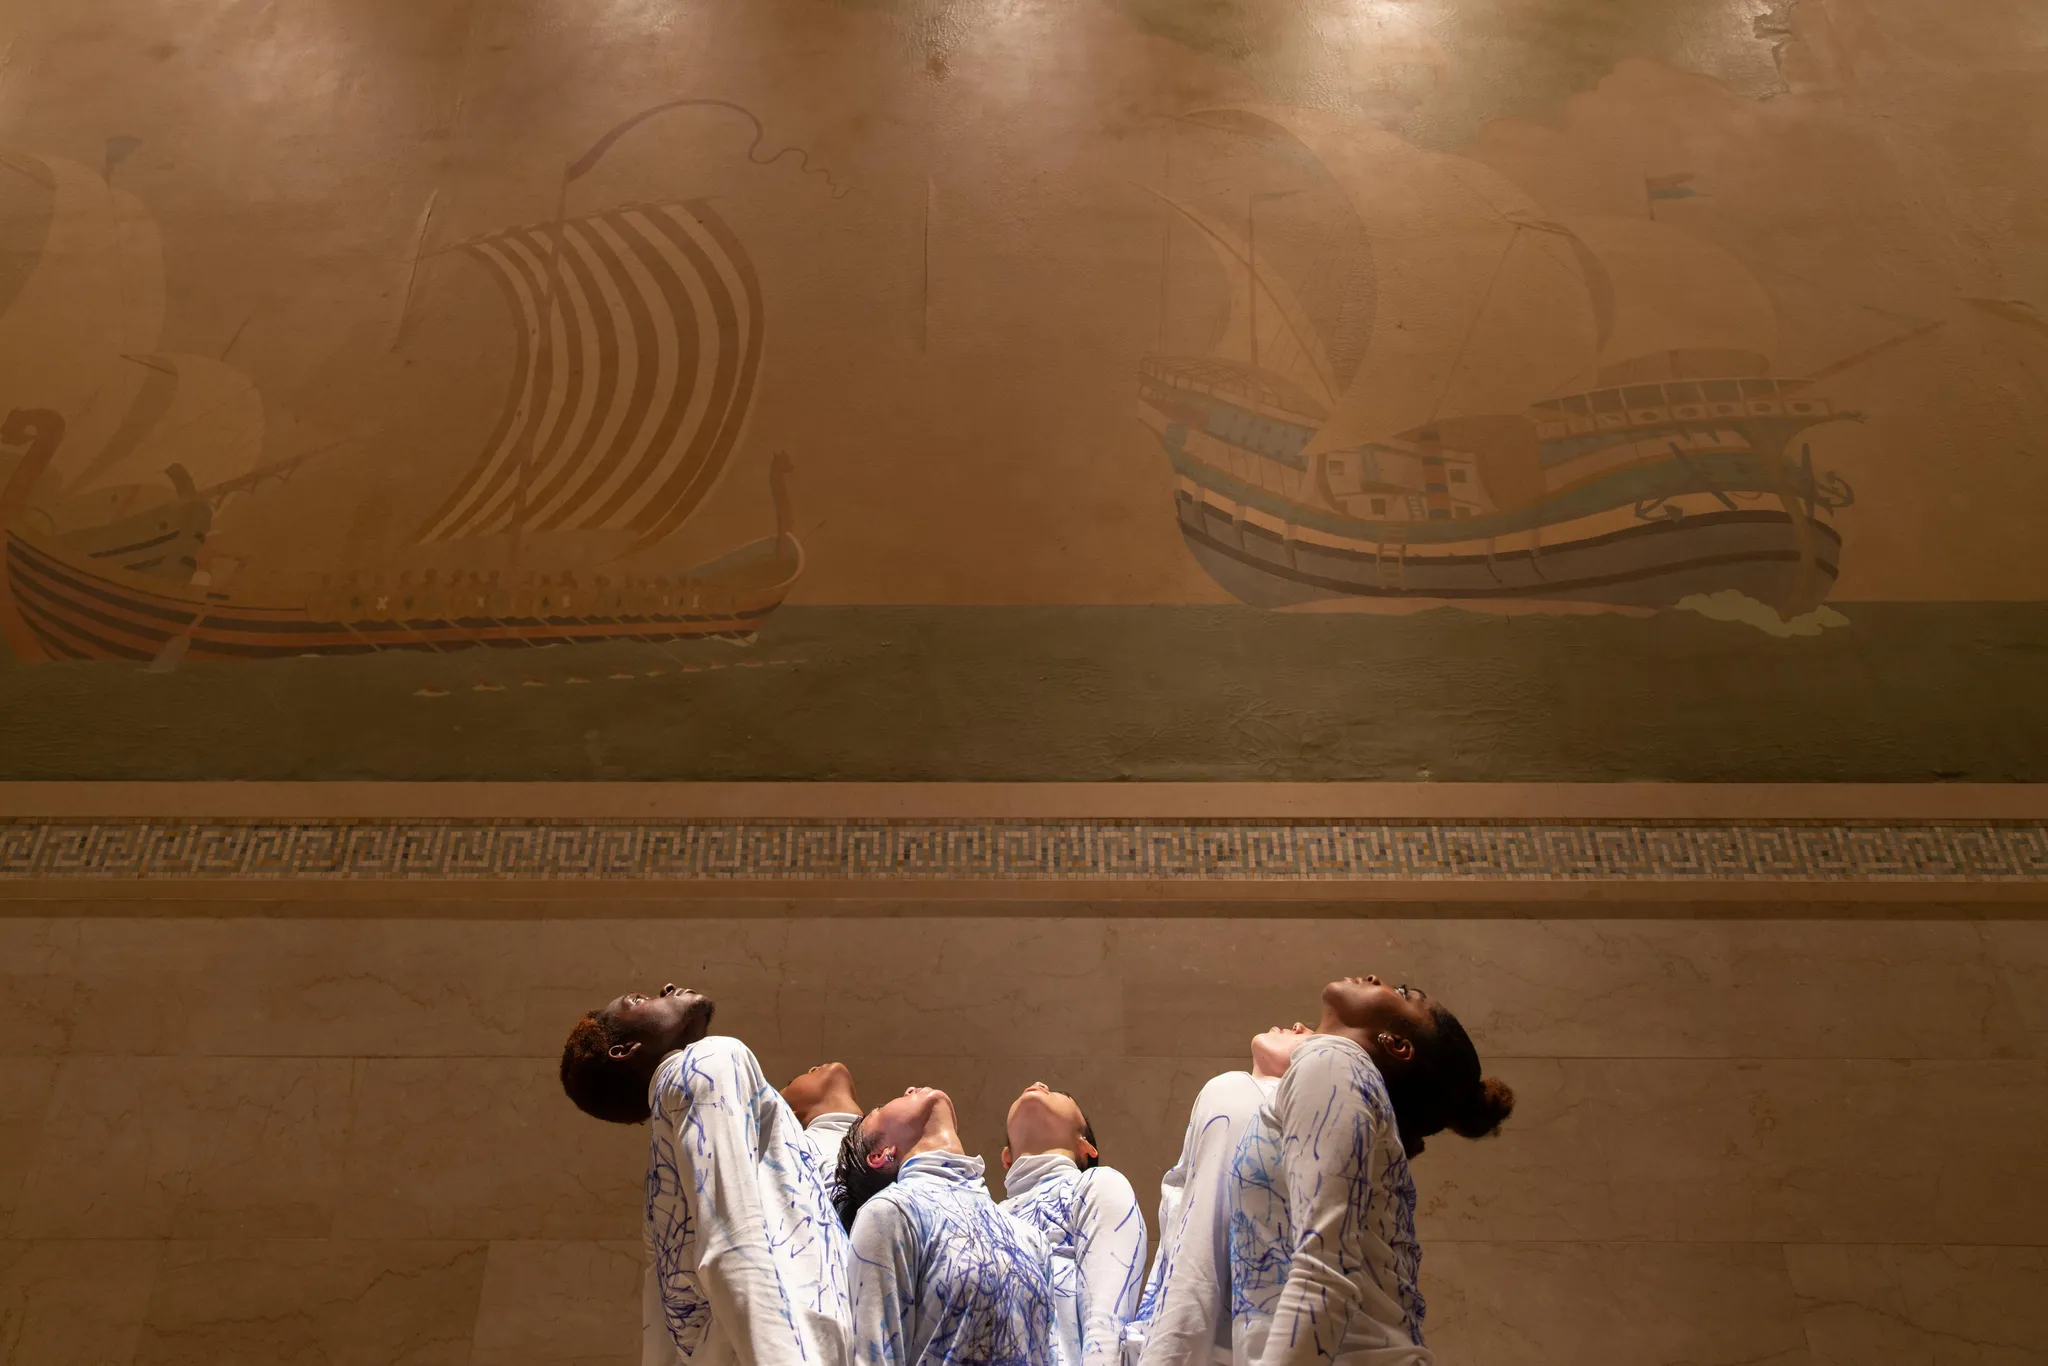 Zes performers van verschillende etnische achtergronden kijken omhoog, voor een muurschildering van twee oude schepen